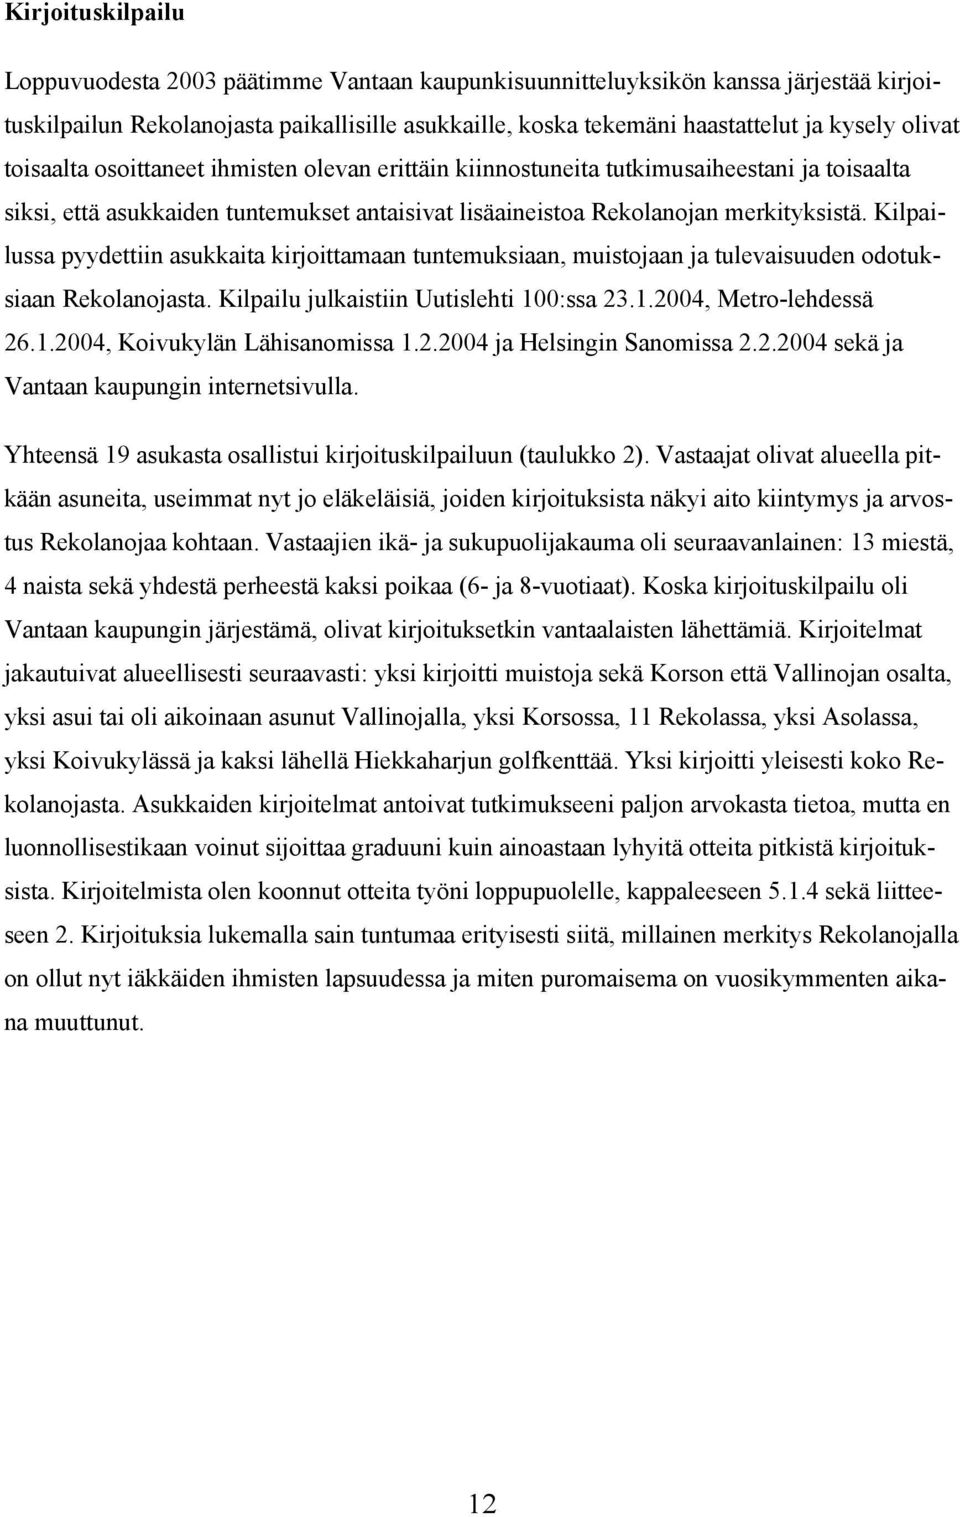 Kilpailussa pyydettiin asukkaita kirjoittamaan tuntemuksiaan, muistojaan ja tulevaisuuden odotuksiaan Rekolanojasta. Kilpailu julkaistiin Uutislehti 100:ssa 23.1.2004, Metro-lehdessä 26.1.2004, Koivukylän Lähisanomissa 1.